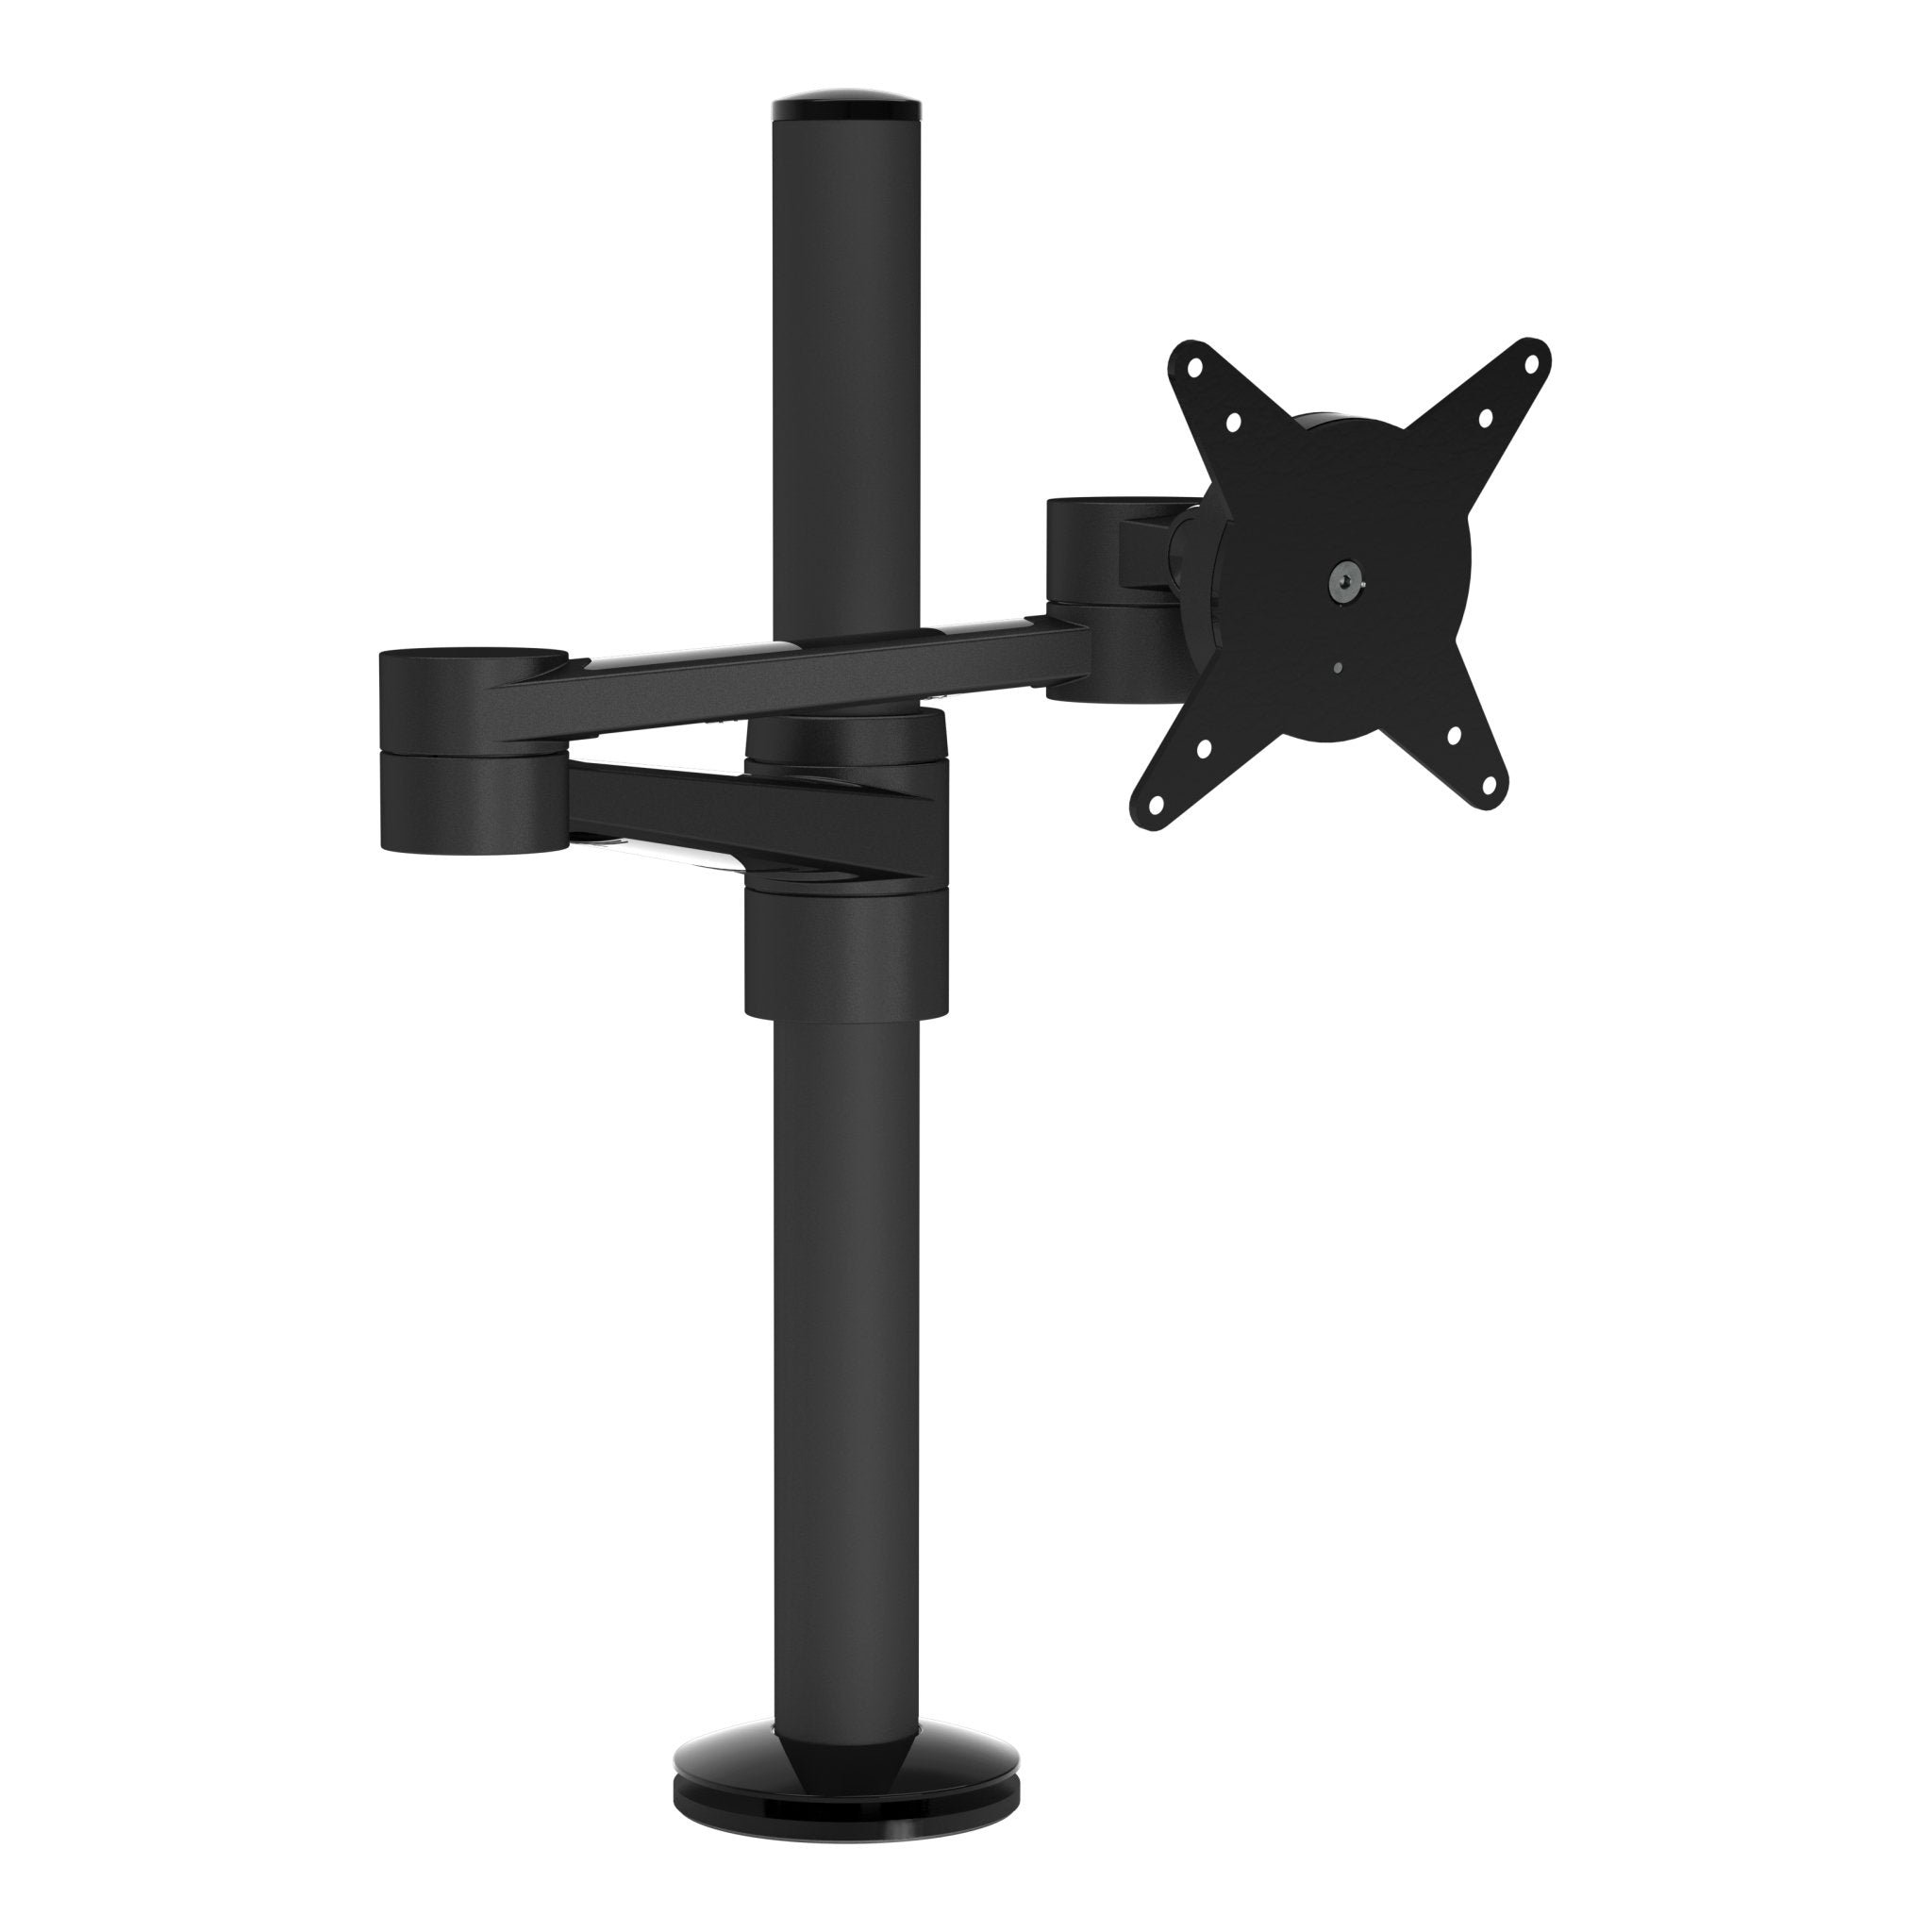 Zwarte monitorarm voor een bureau uit de Viewlite collectie van Dataflex